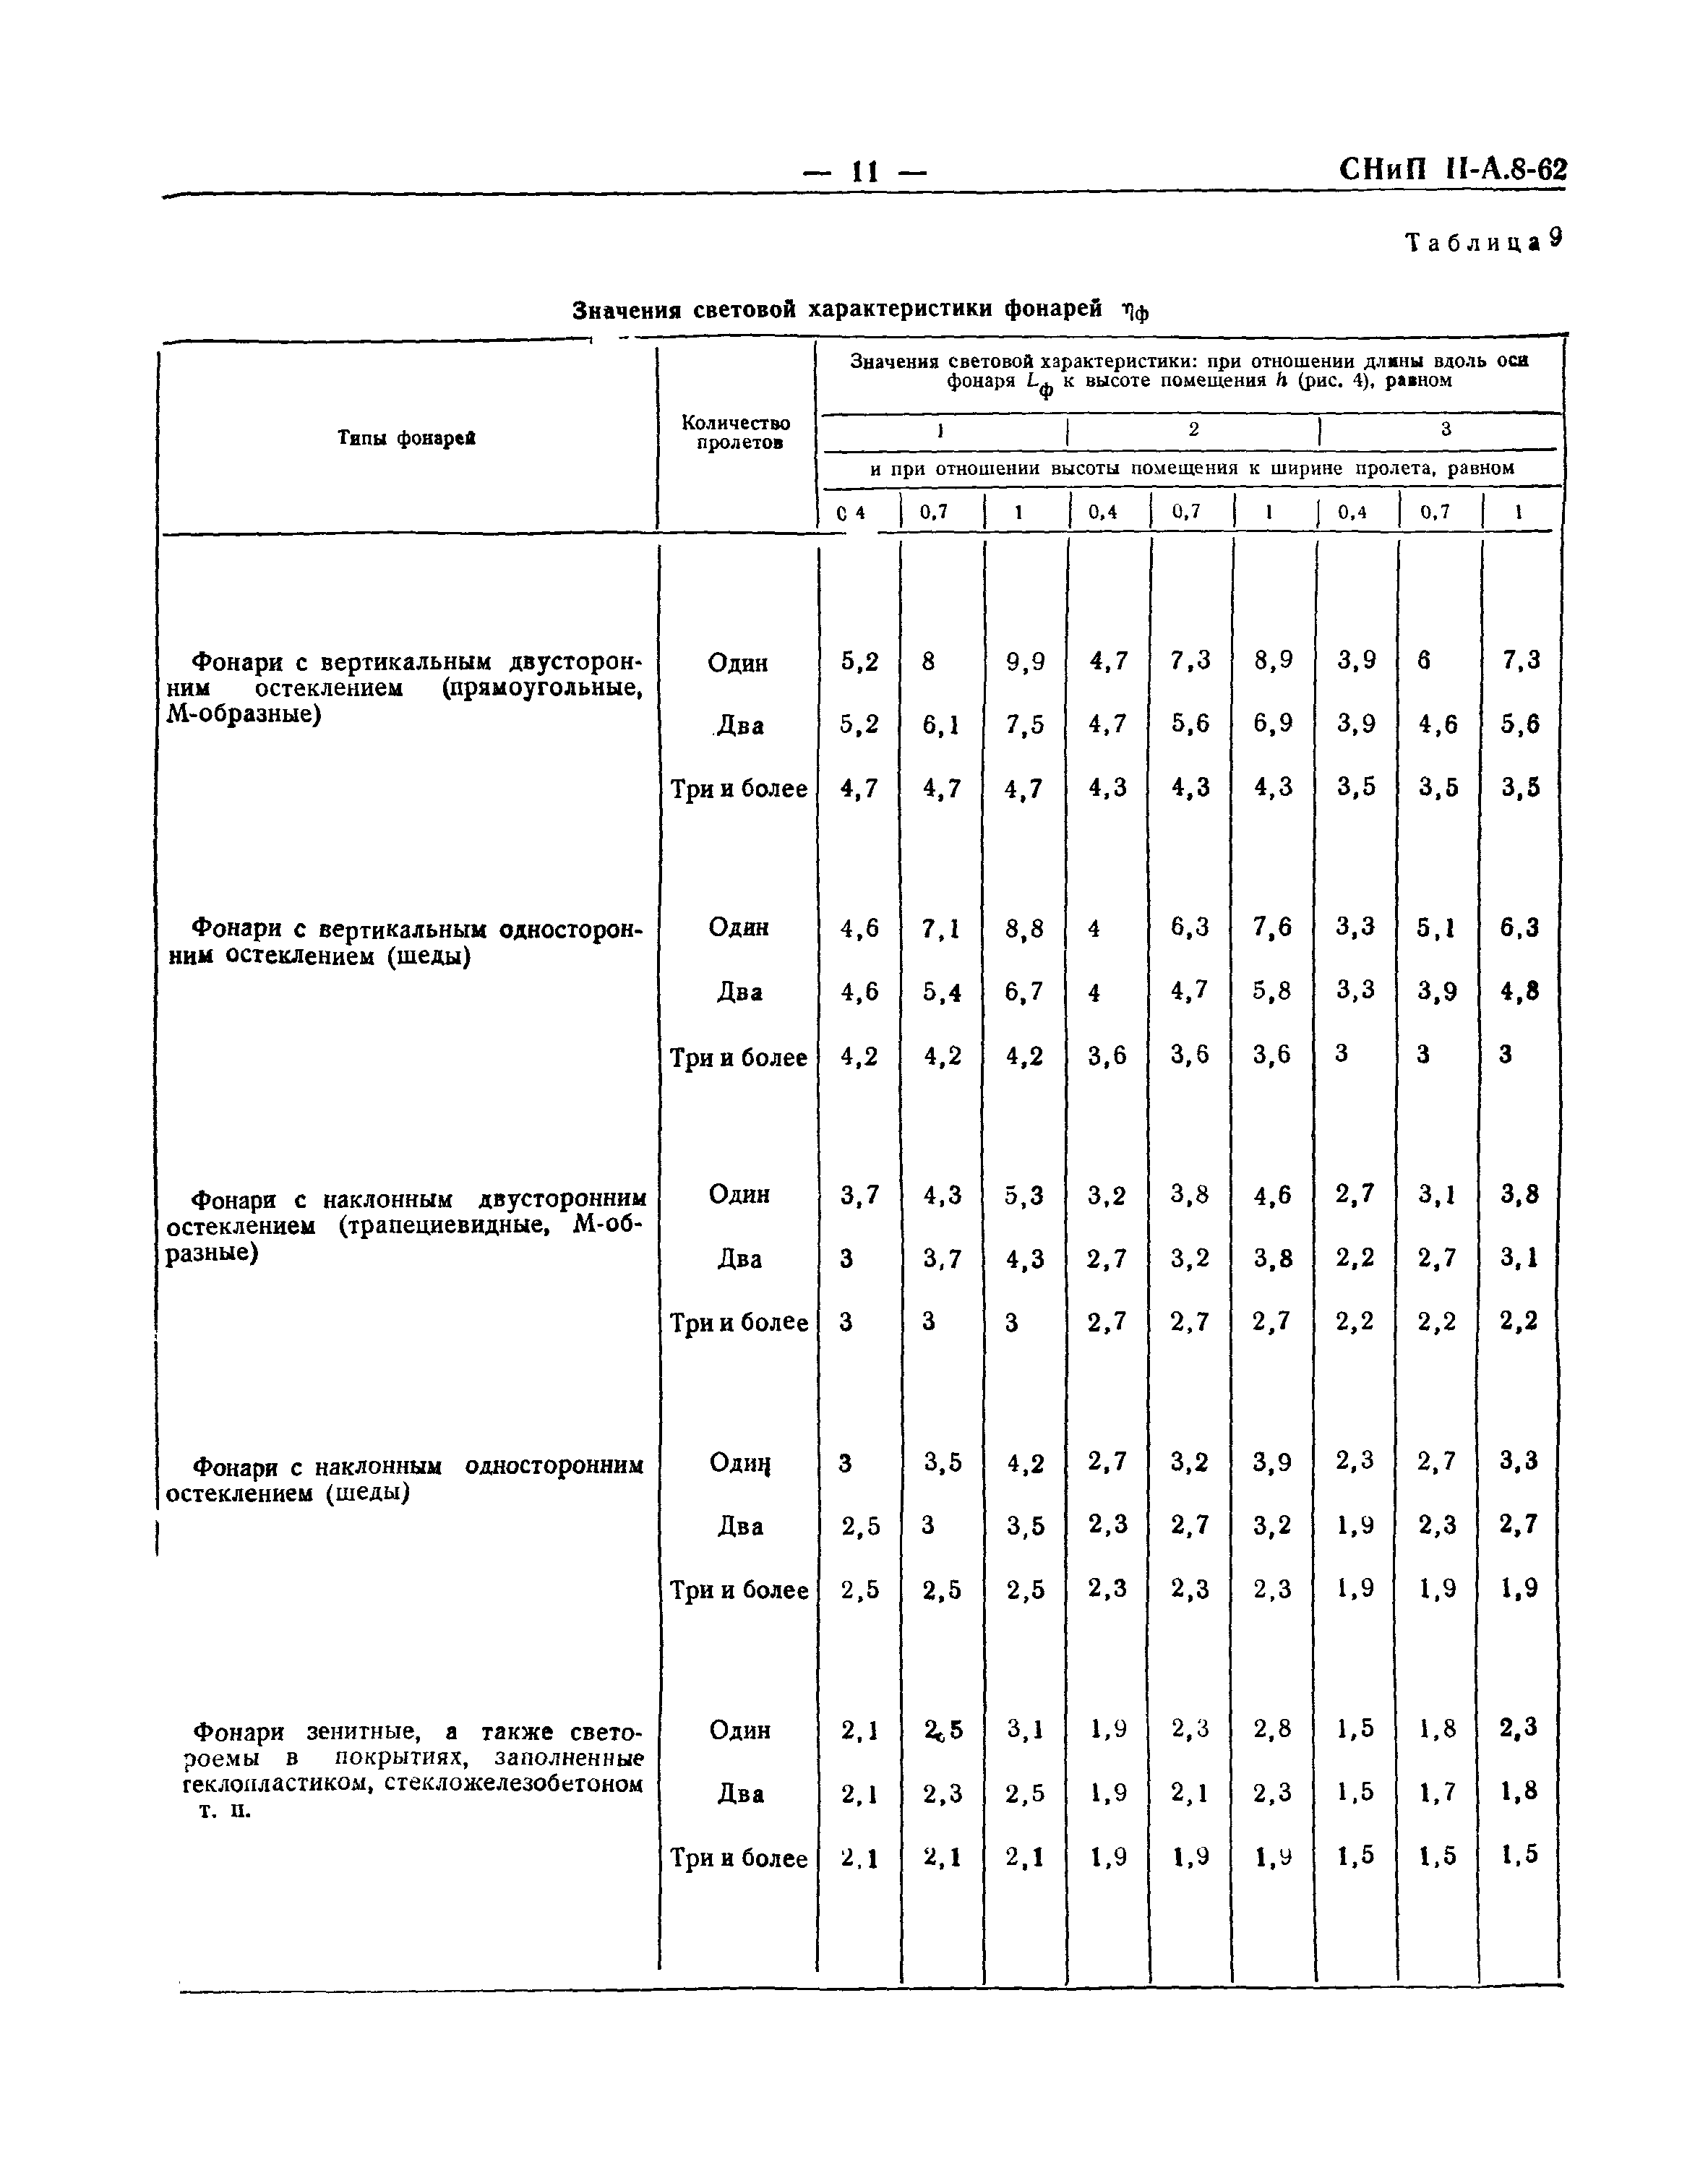 СНиП II-А.8-62